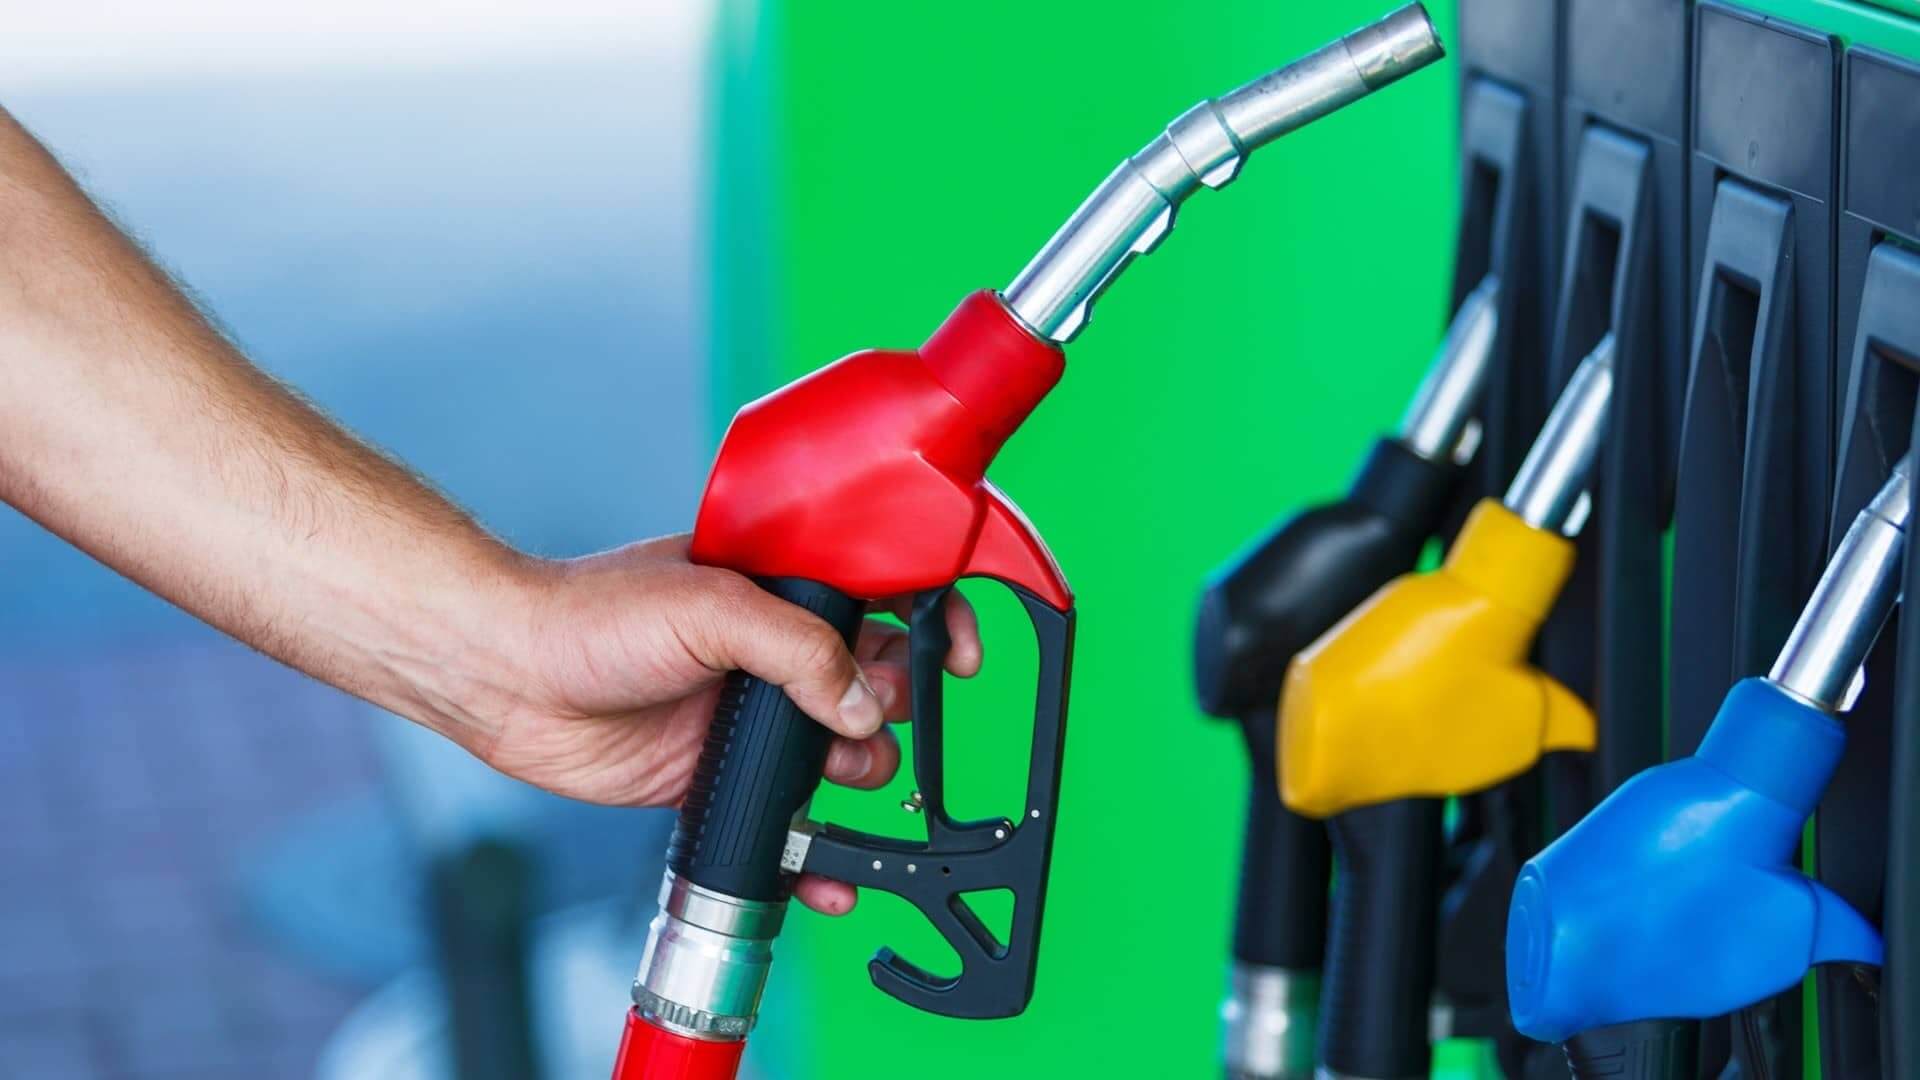 Benzine, diesel, LPG, alternatieve brandstoffen: welke brandstof past het beste bij u?